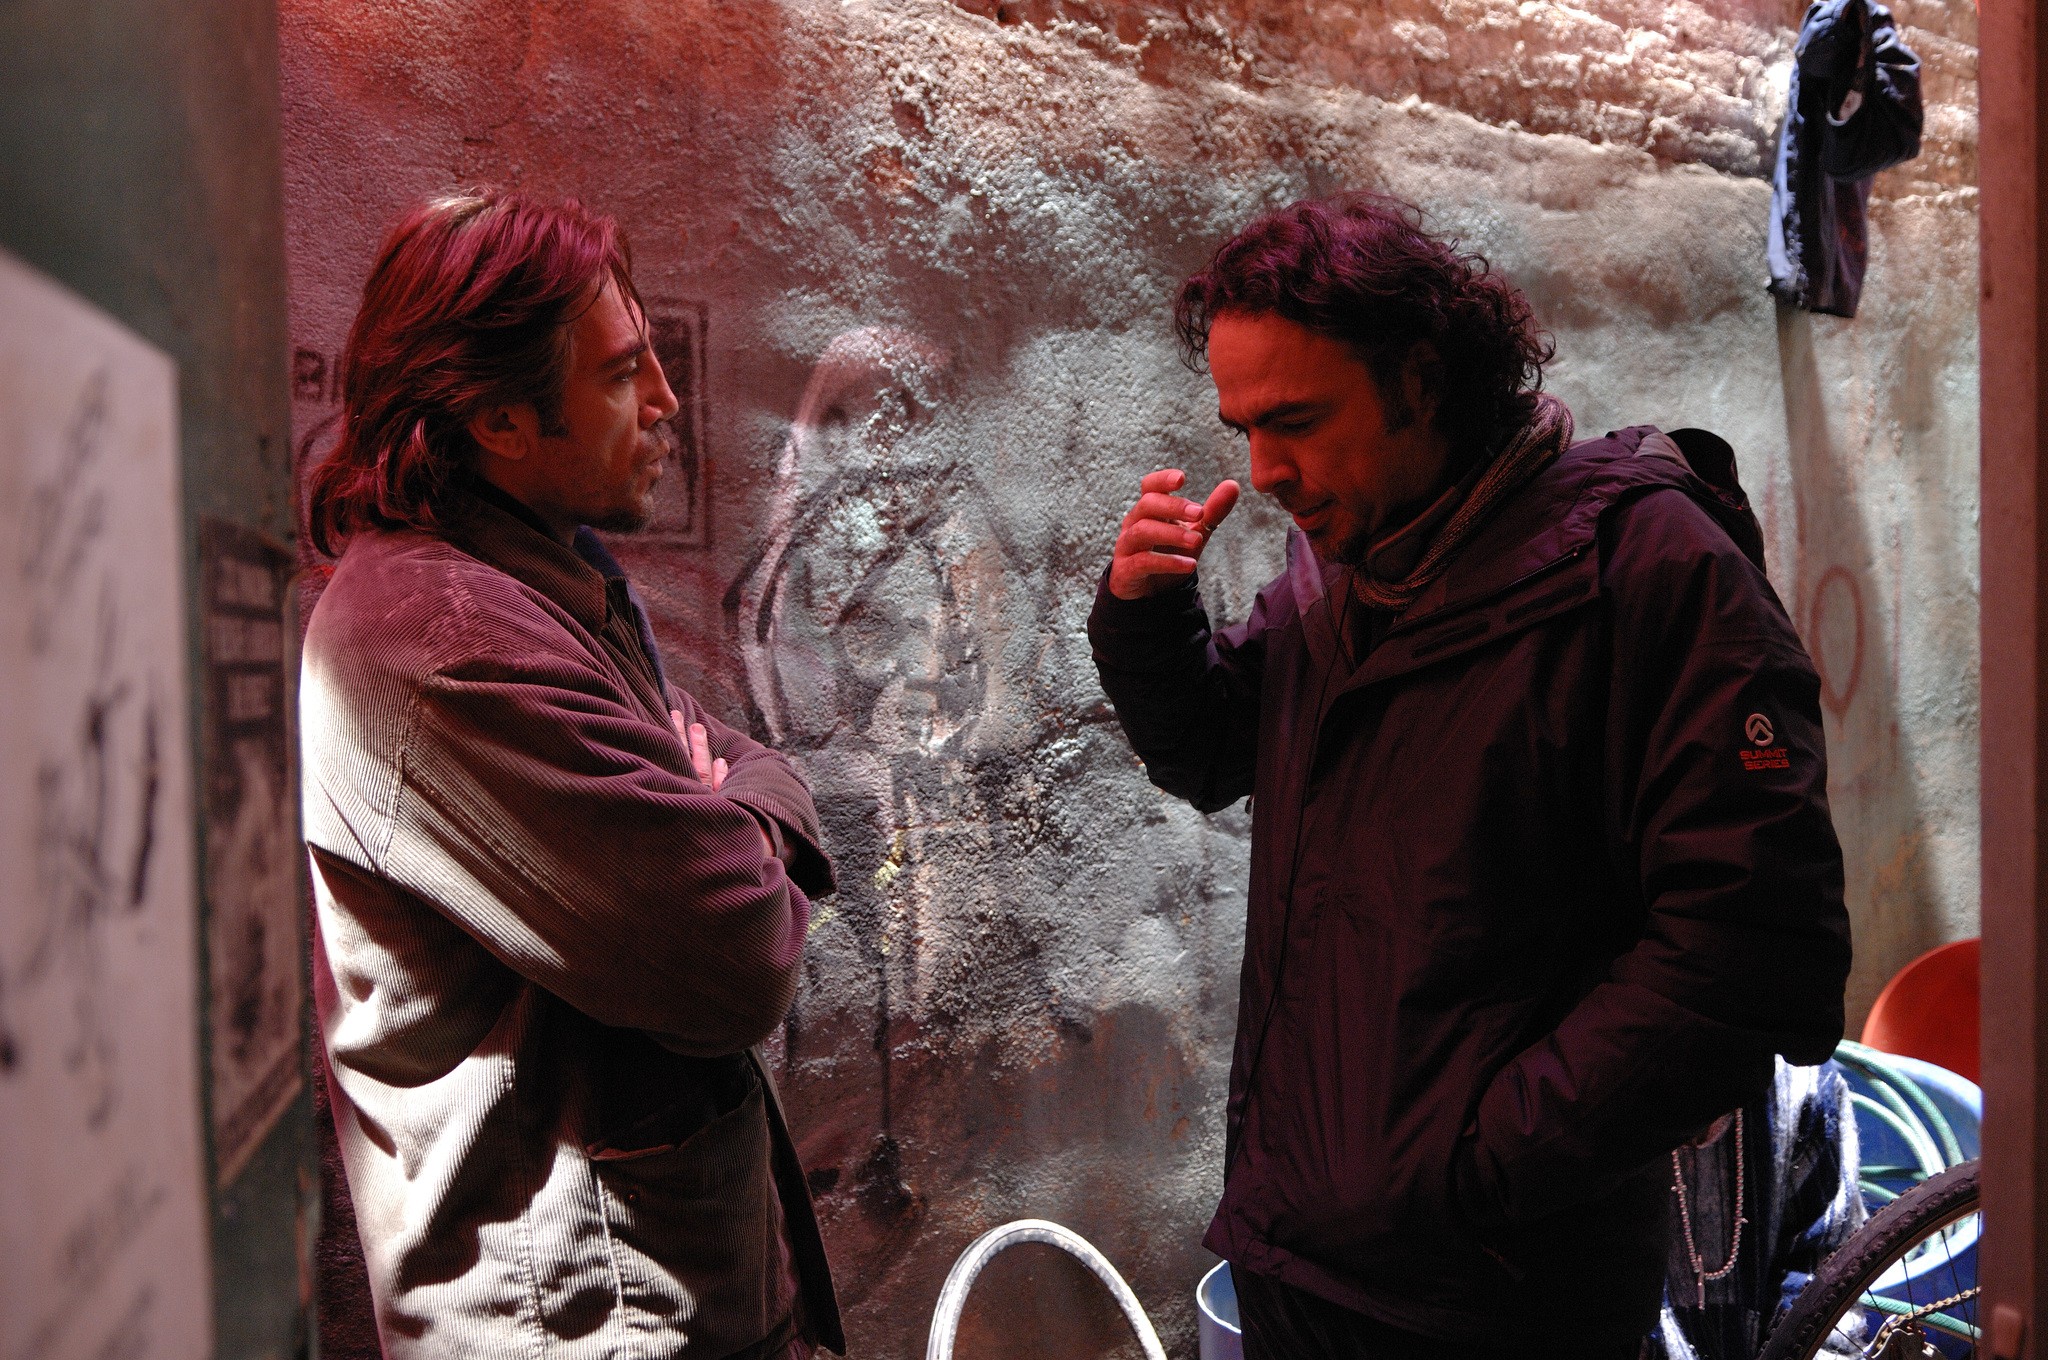 Алехандро Гонсалес Иньярриту и Хавьер Бардем на съёмках фильма Бьютифул, 2010